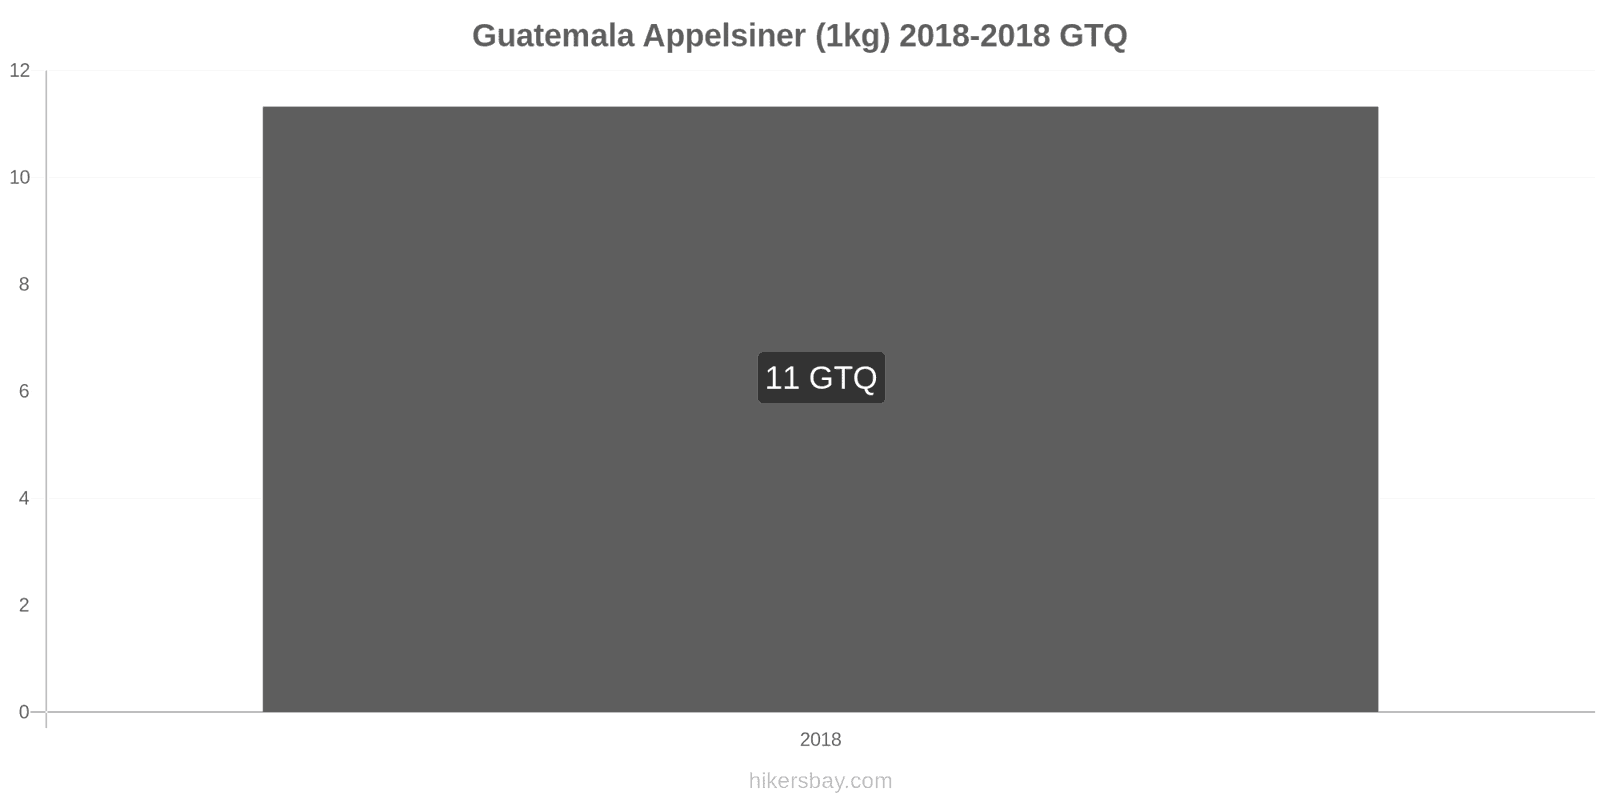 Guatemala prisændringer Appelsiner (1kg) hikersbay.com